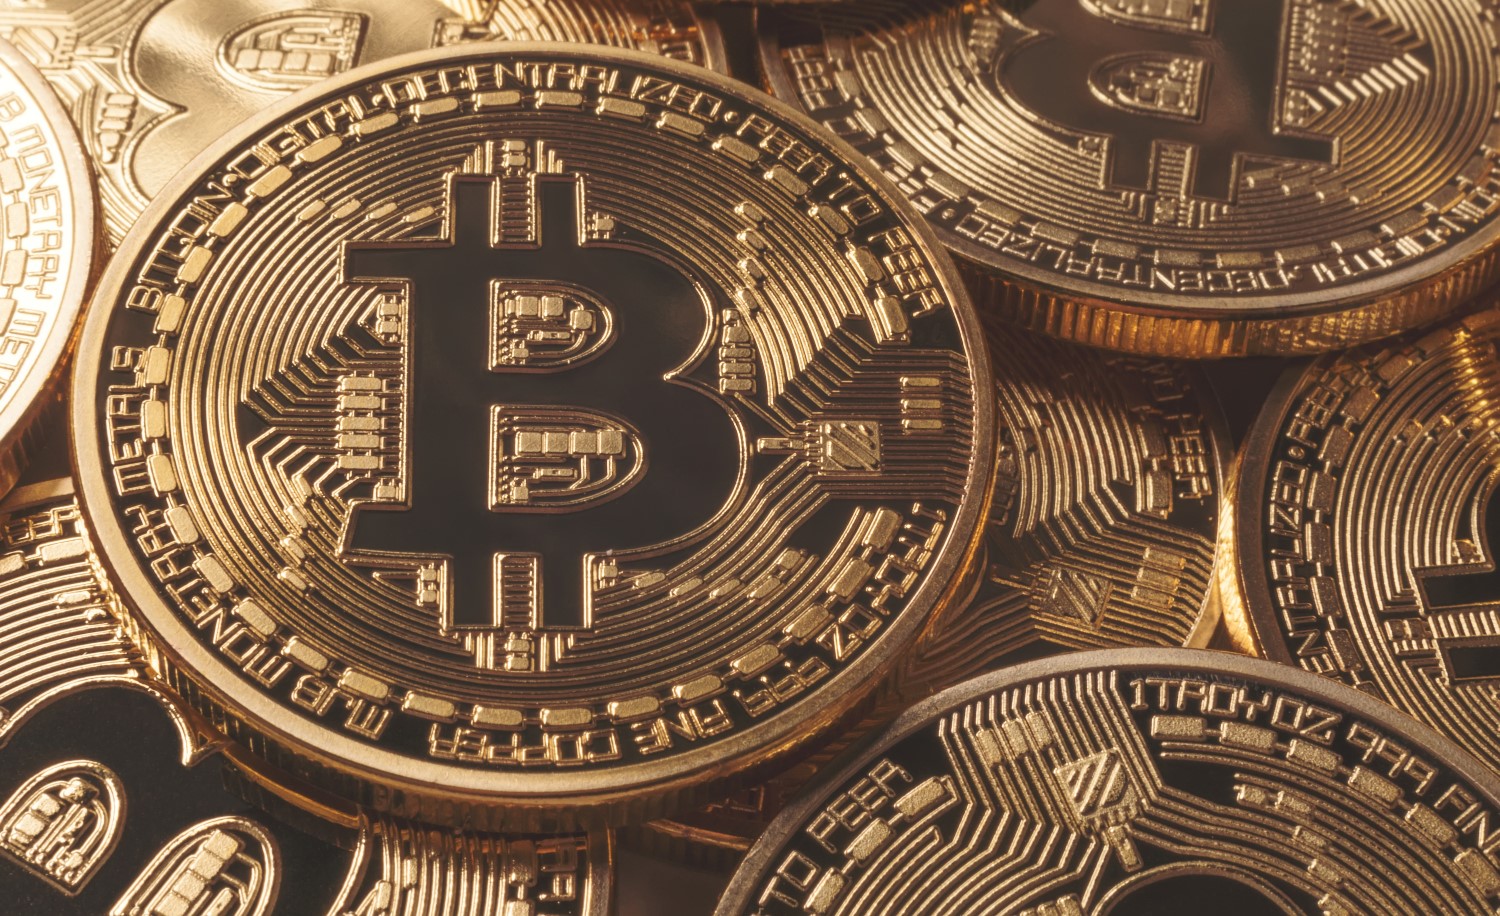 how to earn free bitcoin